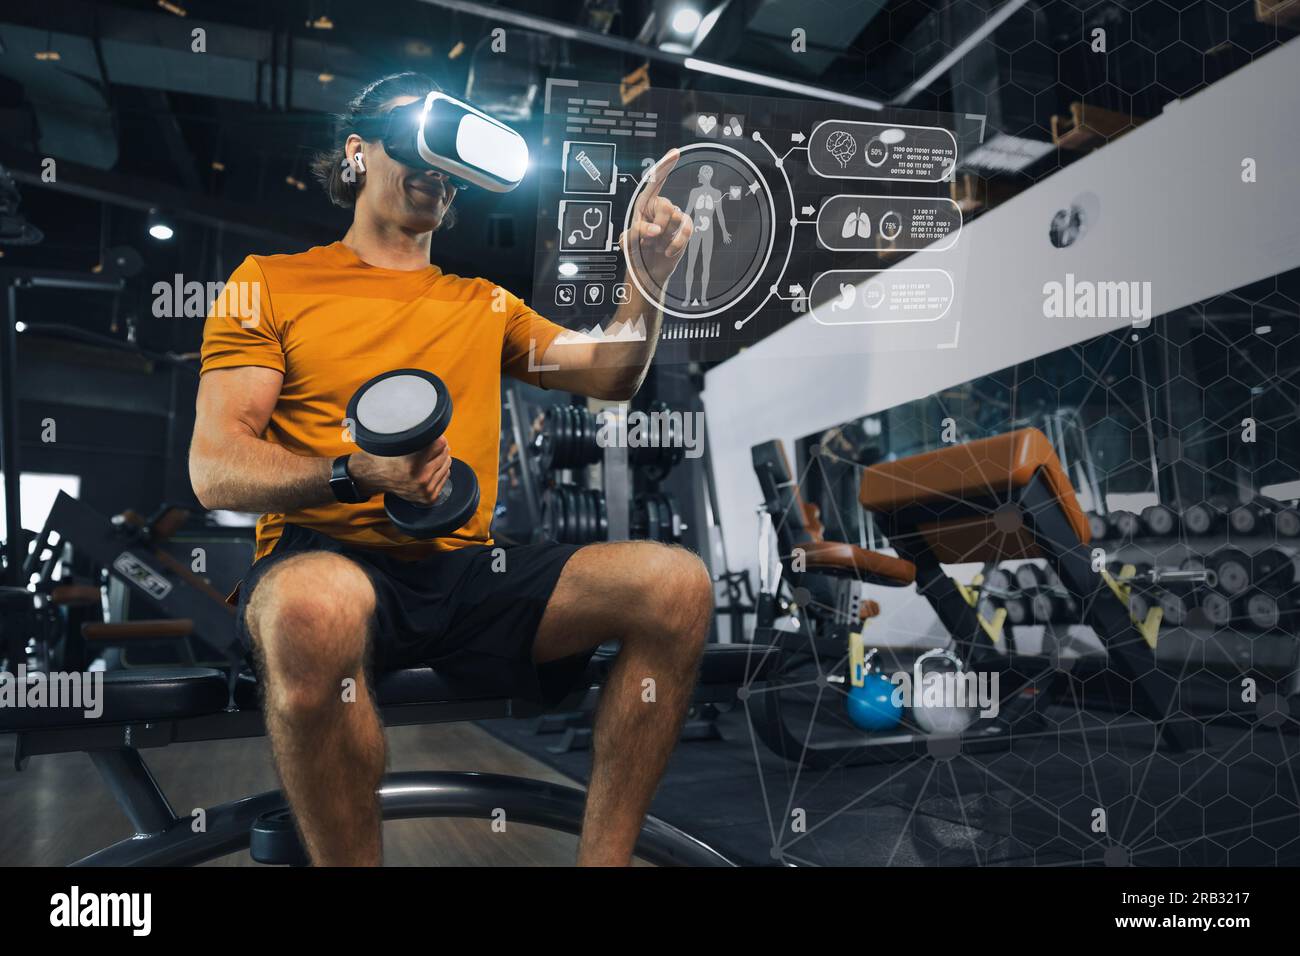 Persone sportive intelligenti e sane che utilizzano la tecnologia avanzata dell'analizzatore visivo della composizione corporea concetto di visore grafico ologramma VR Foto Stock